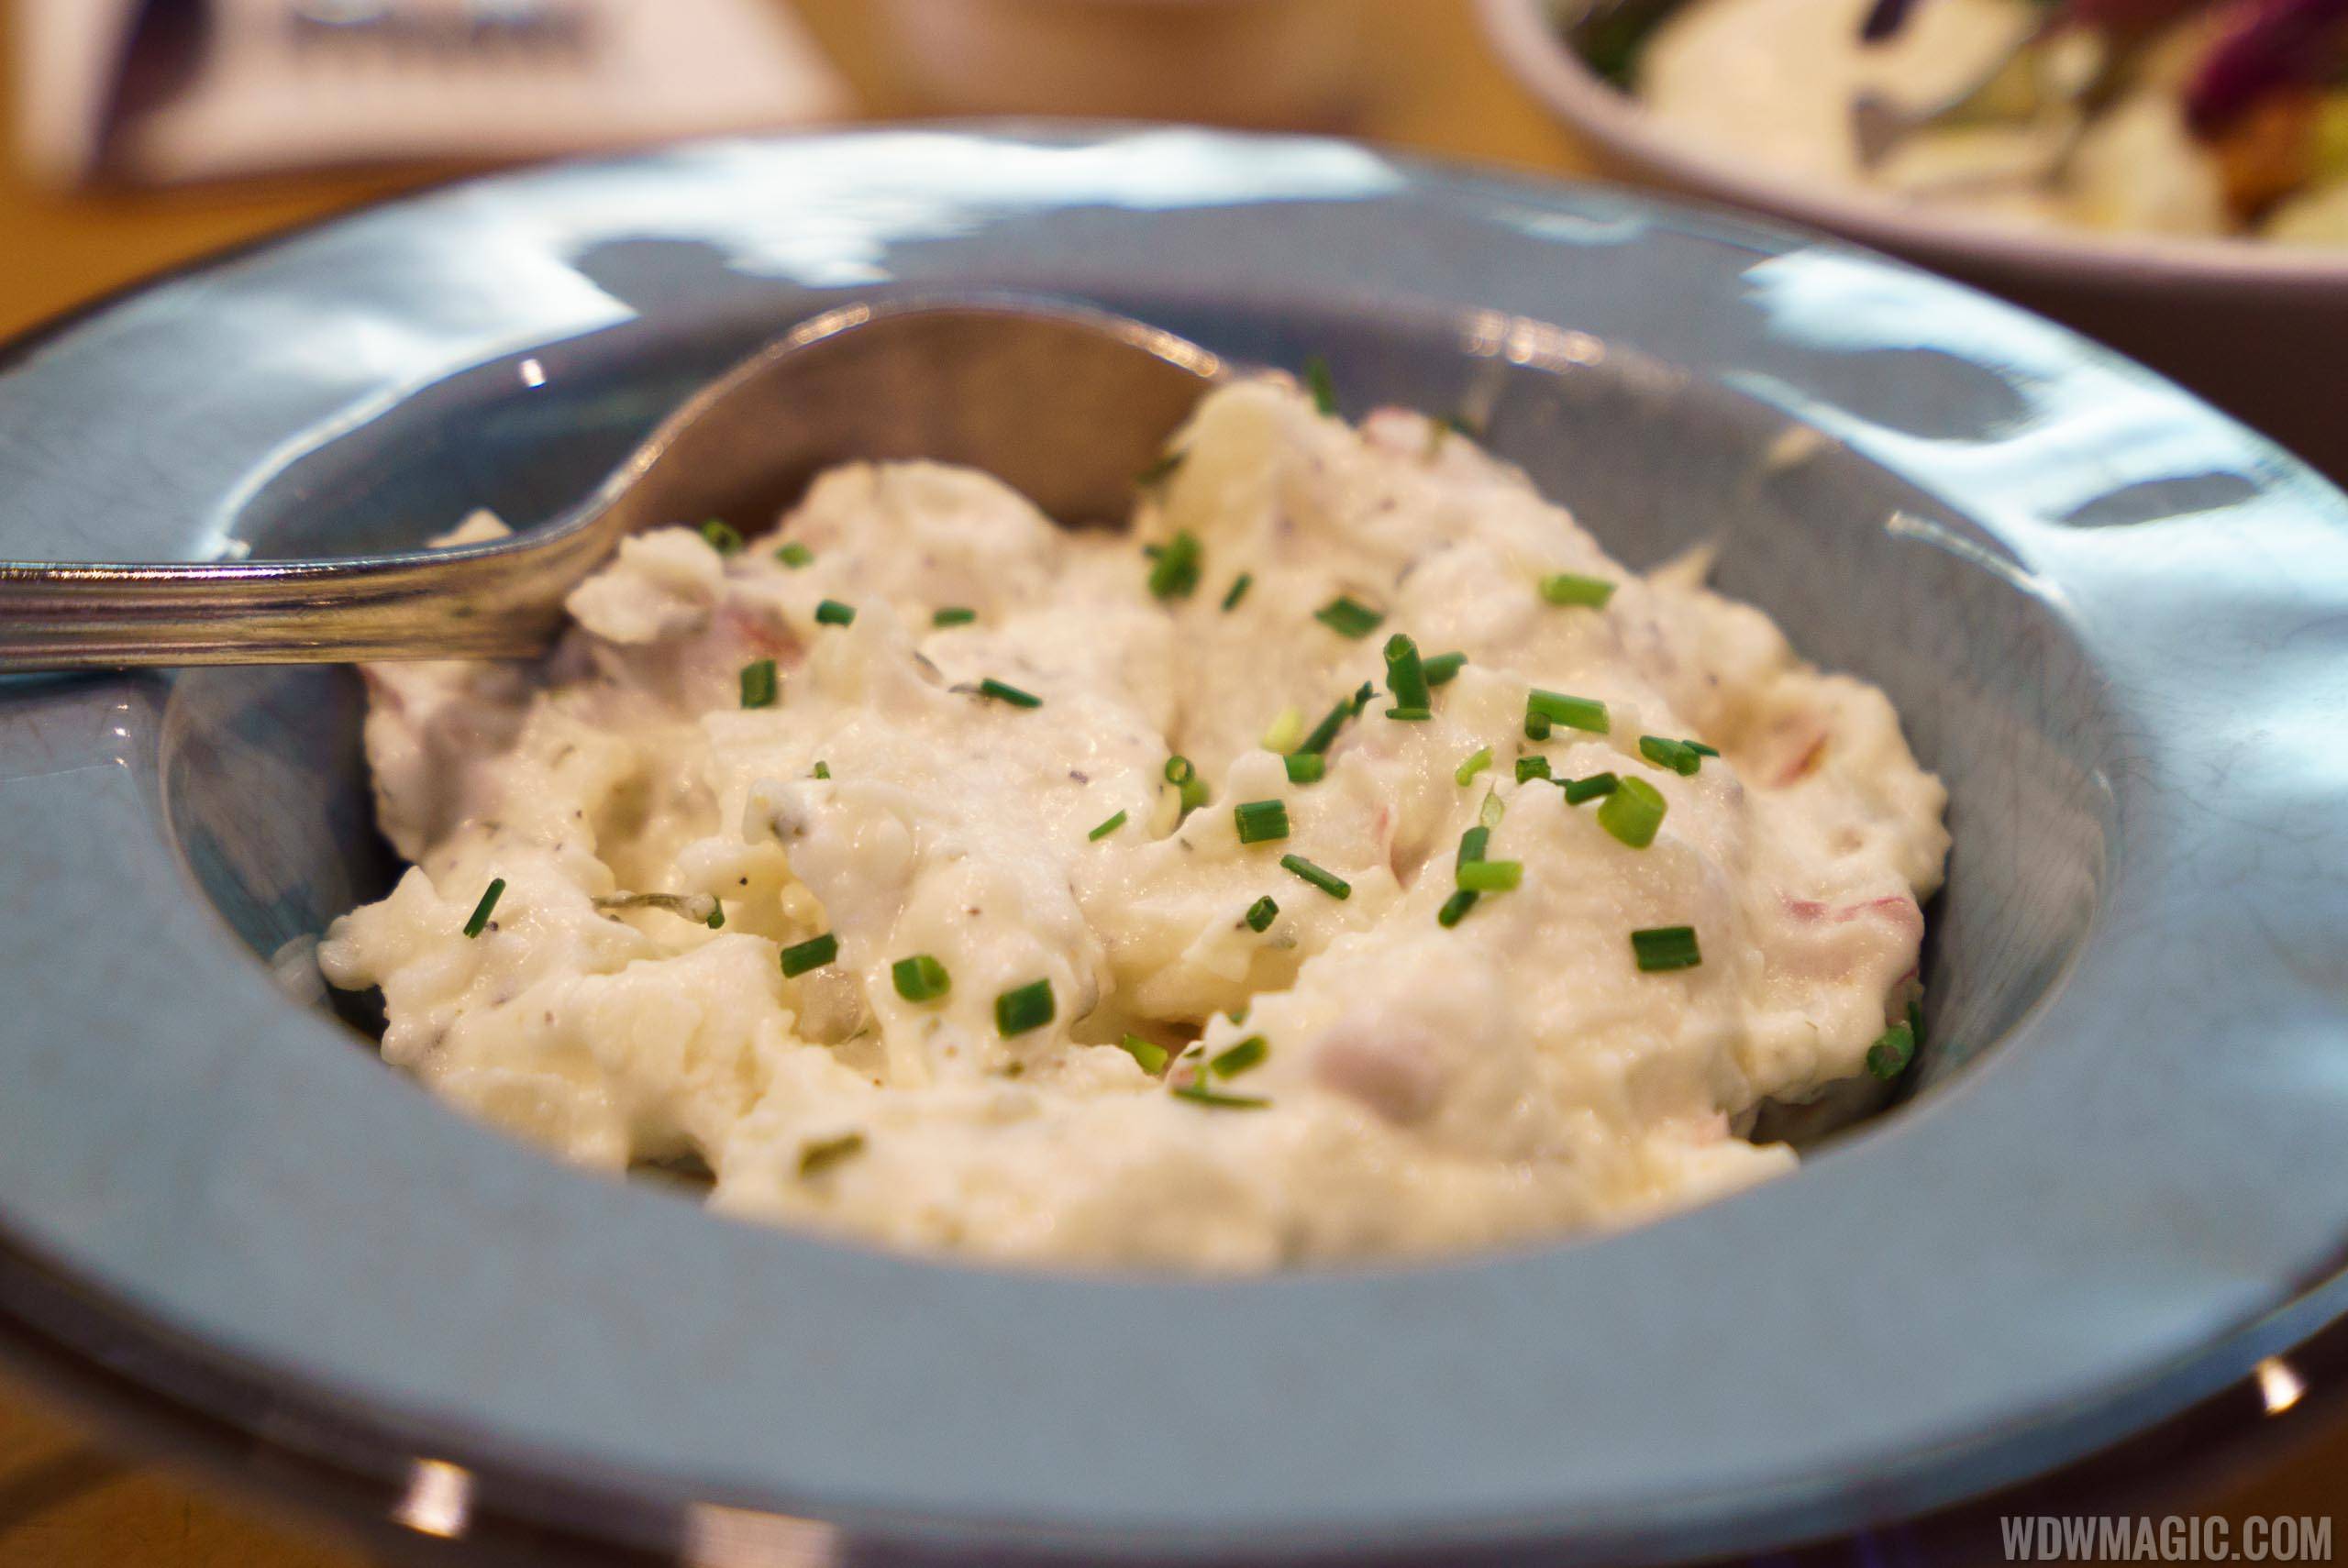 Garden Grill - Potato Salad